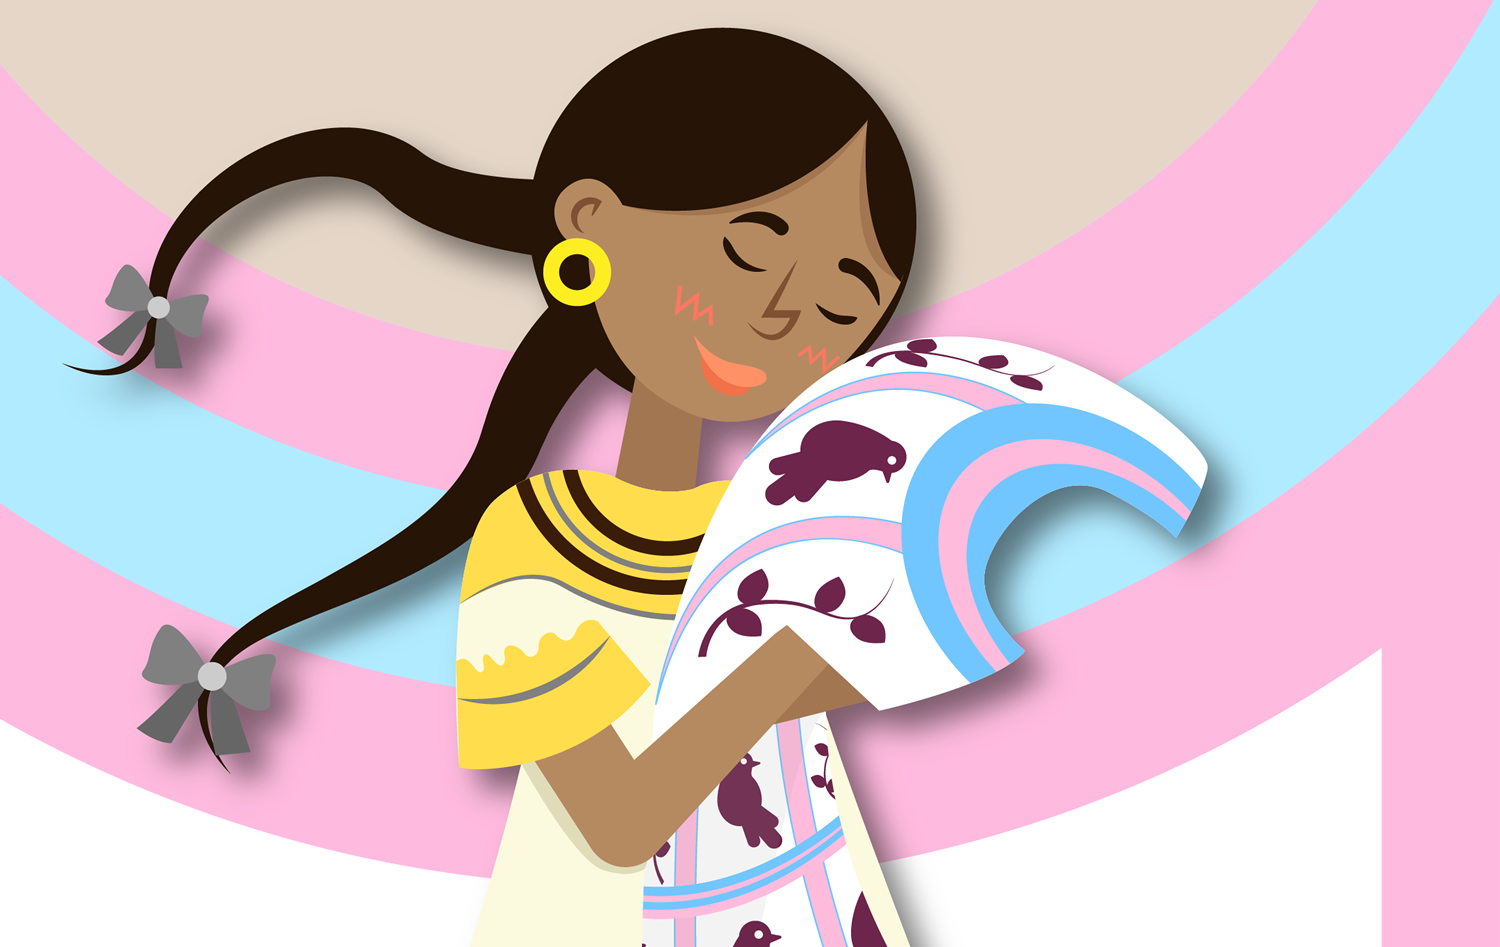 Yu yuu’ - Mujer sol. Conoce cinco historias de mujeres indígenas. Día Internacional de la Mujer.